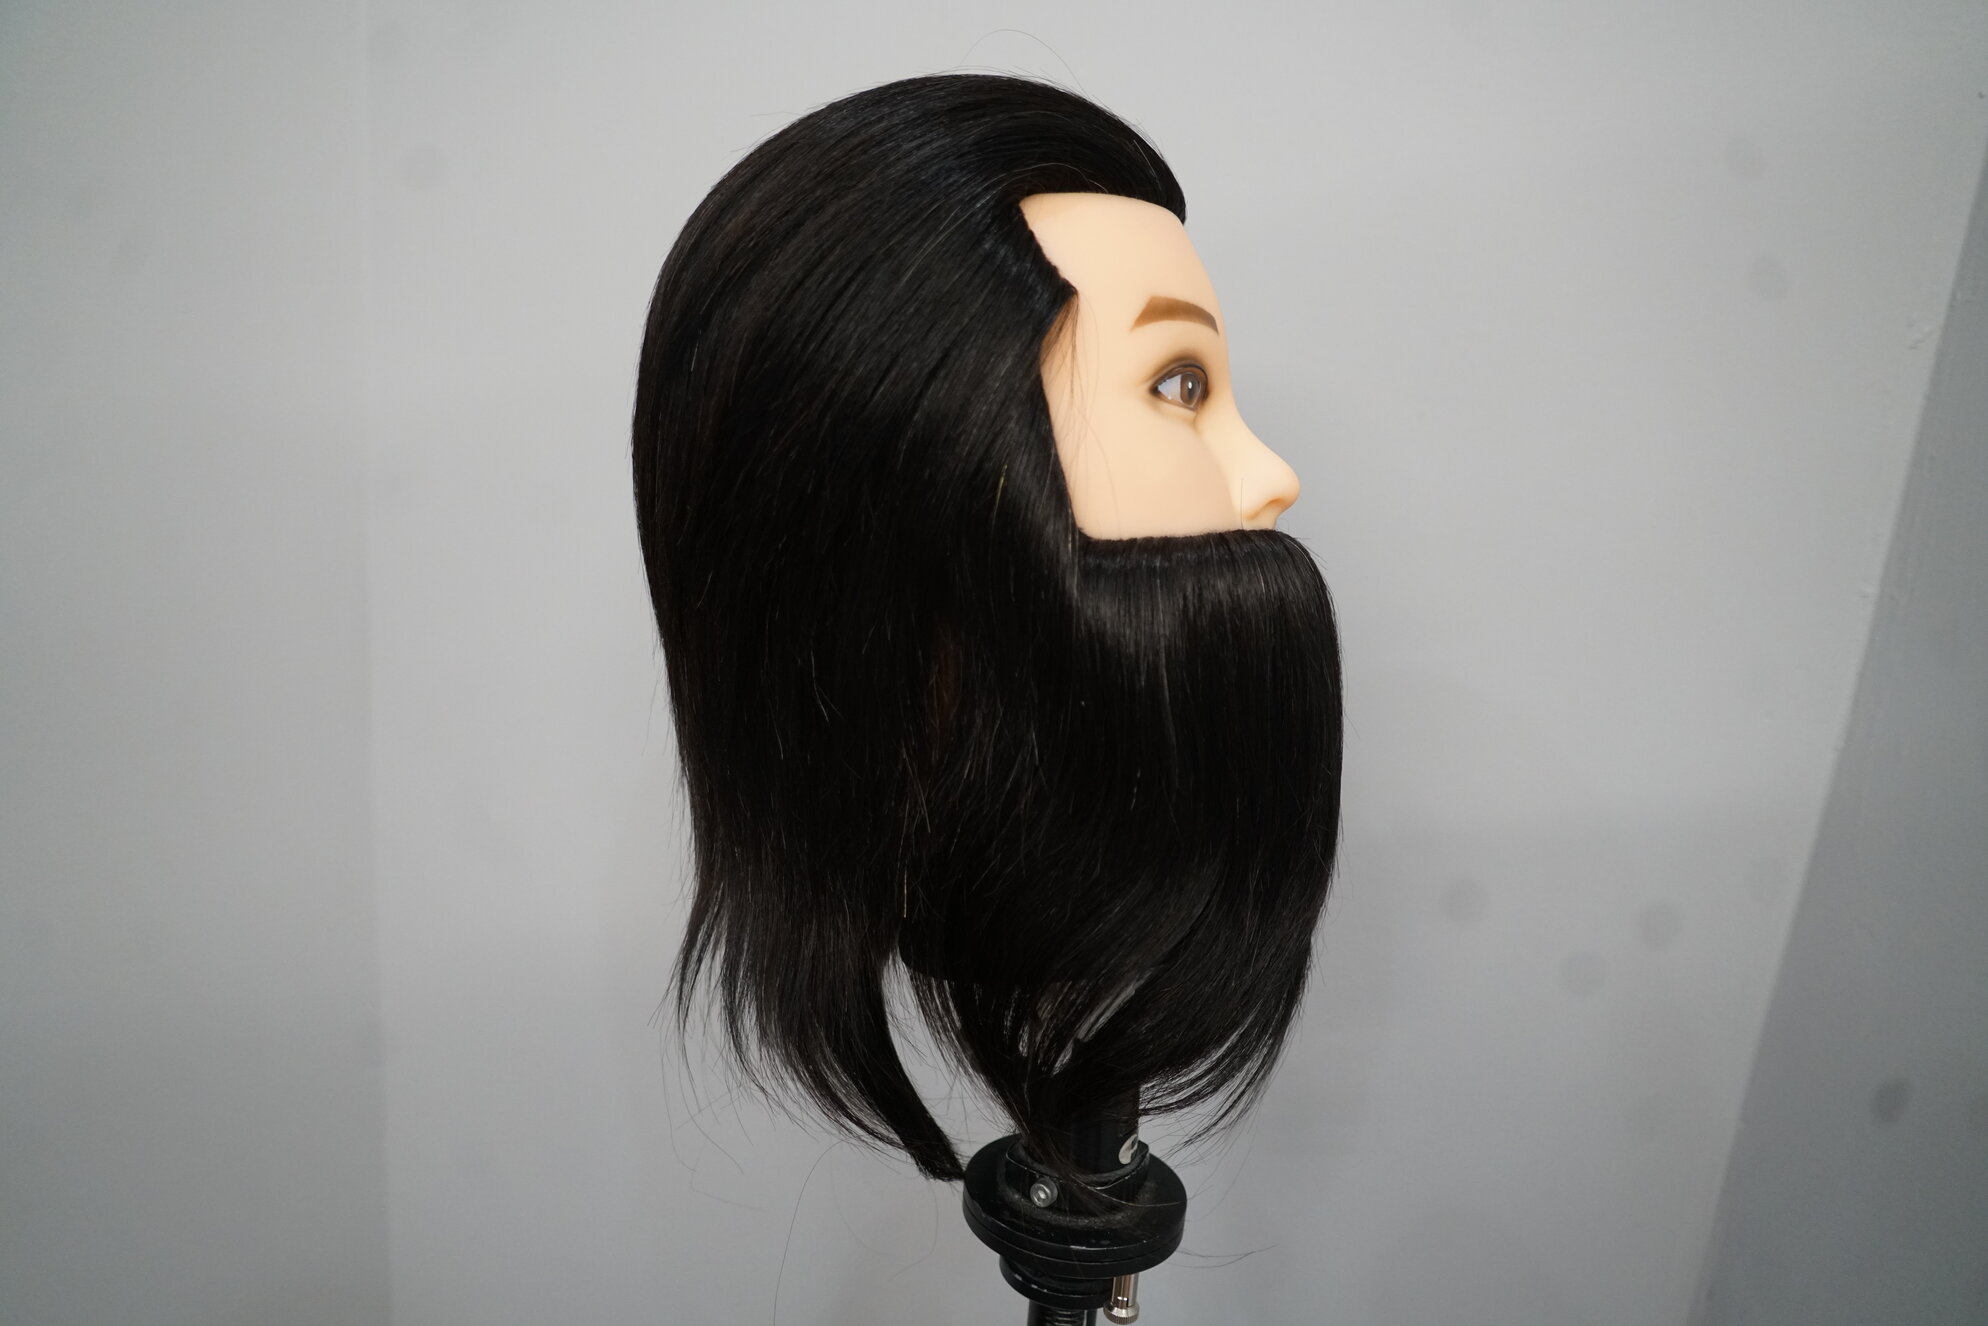 matt a mannequin head hair cutting videos｜TikTok Search